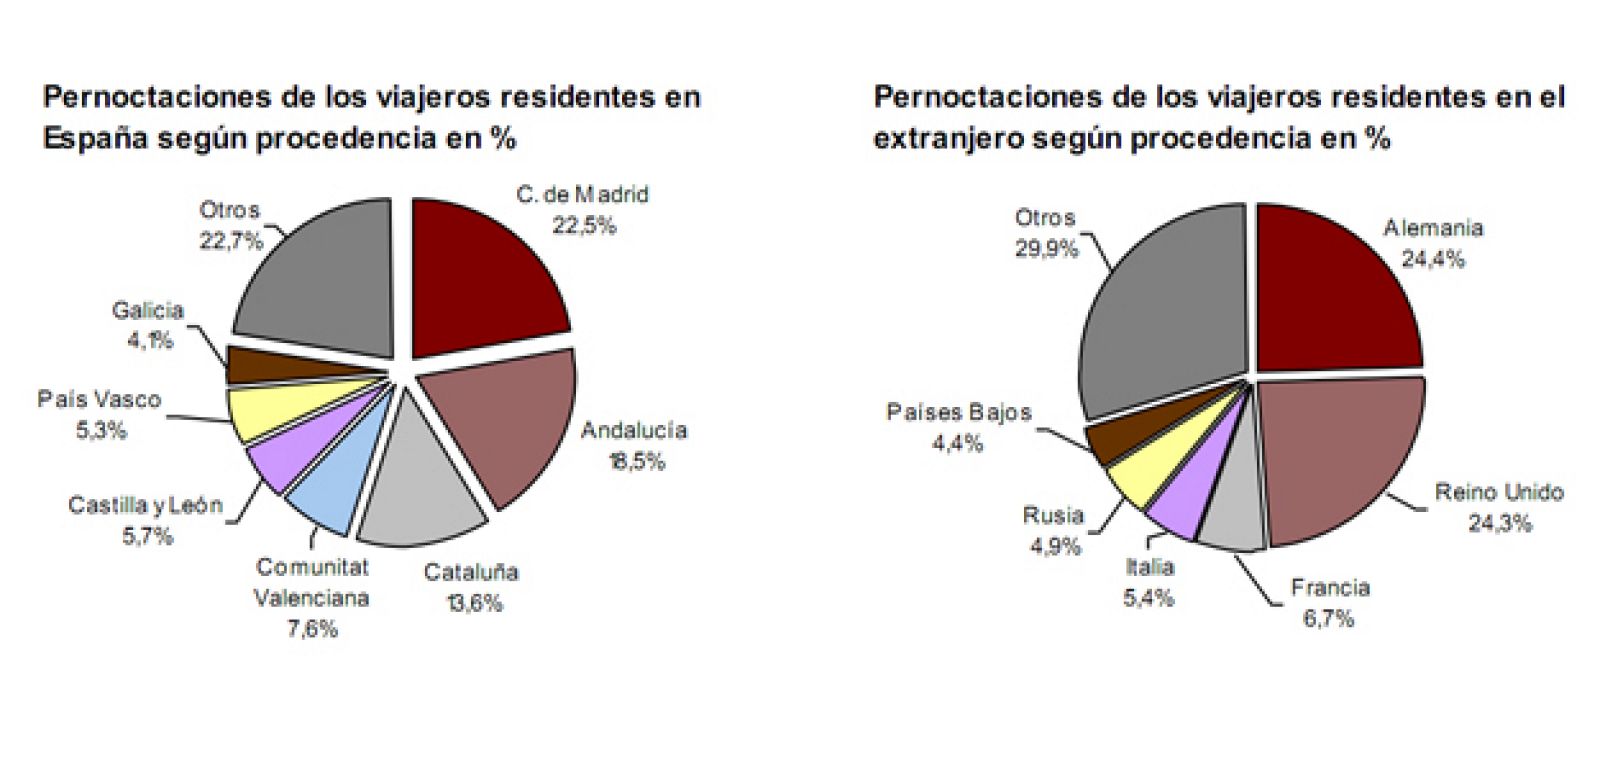 Las pernoctaciones hoteleras en España aumentan en julio de 2011